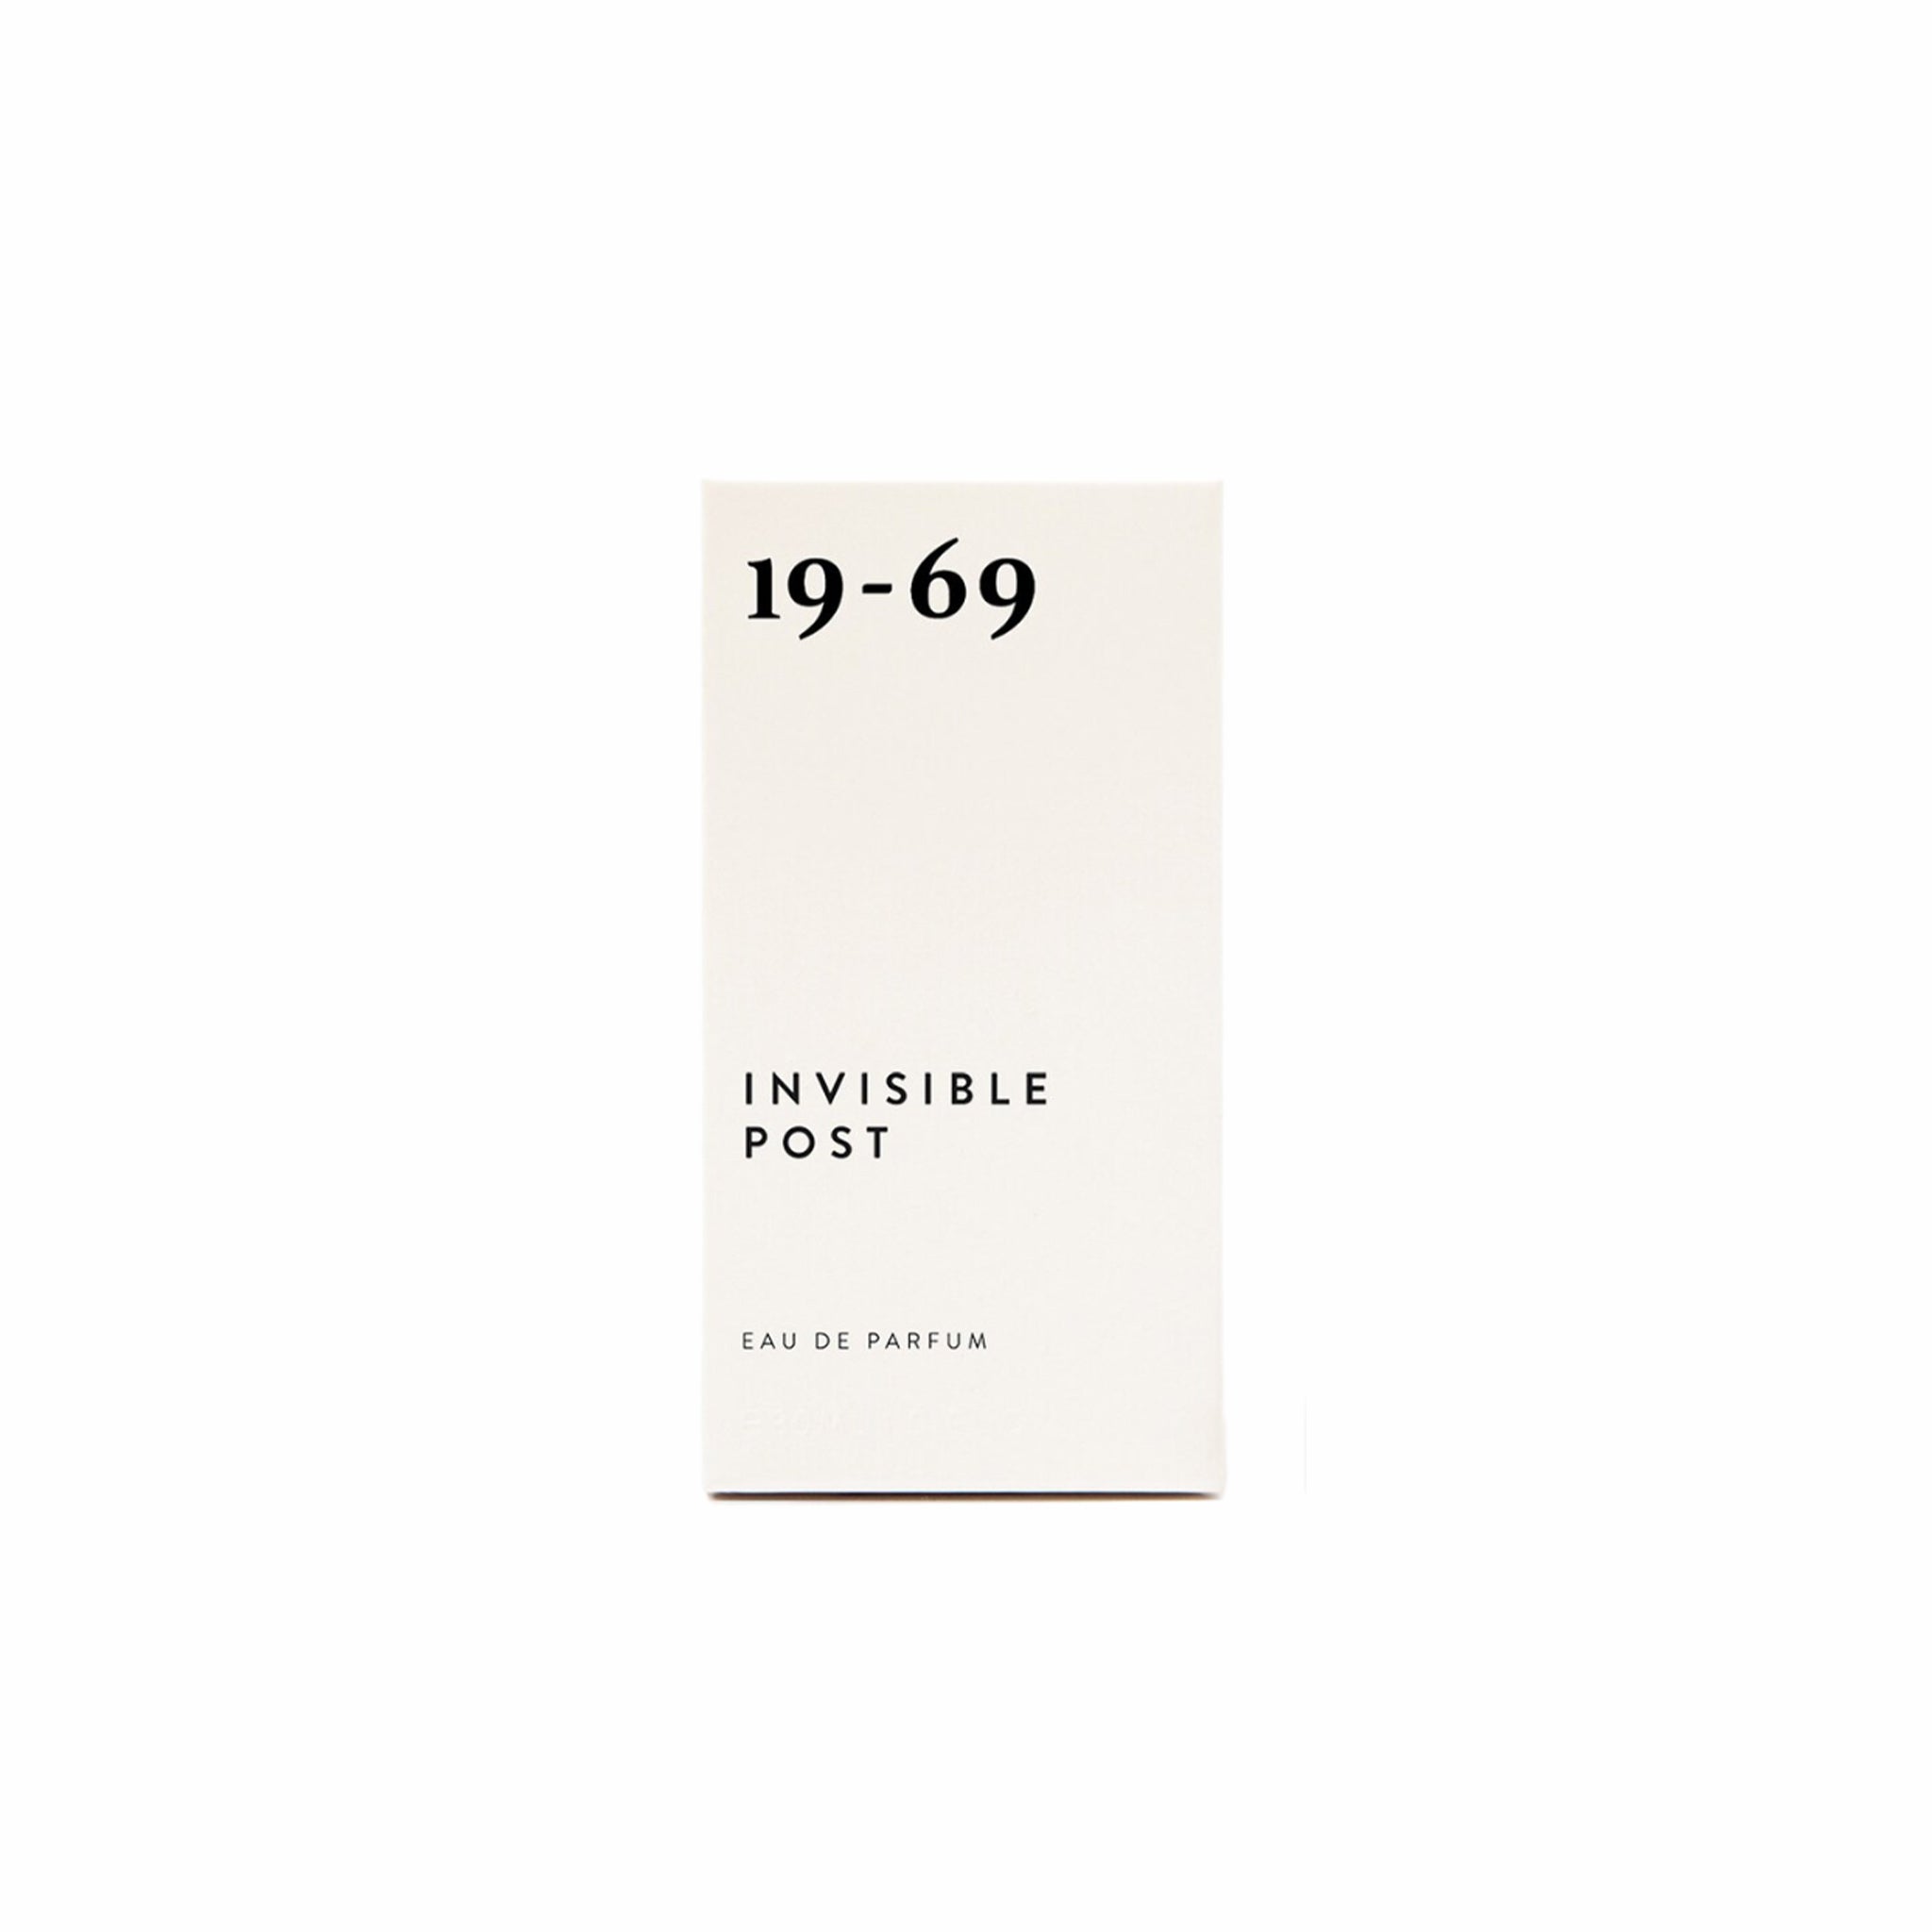 19-69 Invisible Post Eau de Parfum (30mL) - August Shop